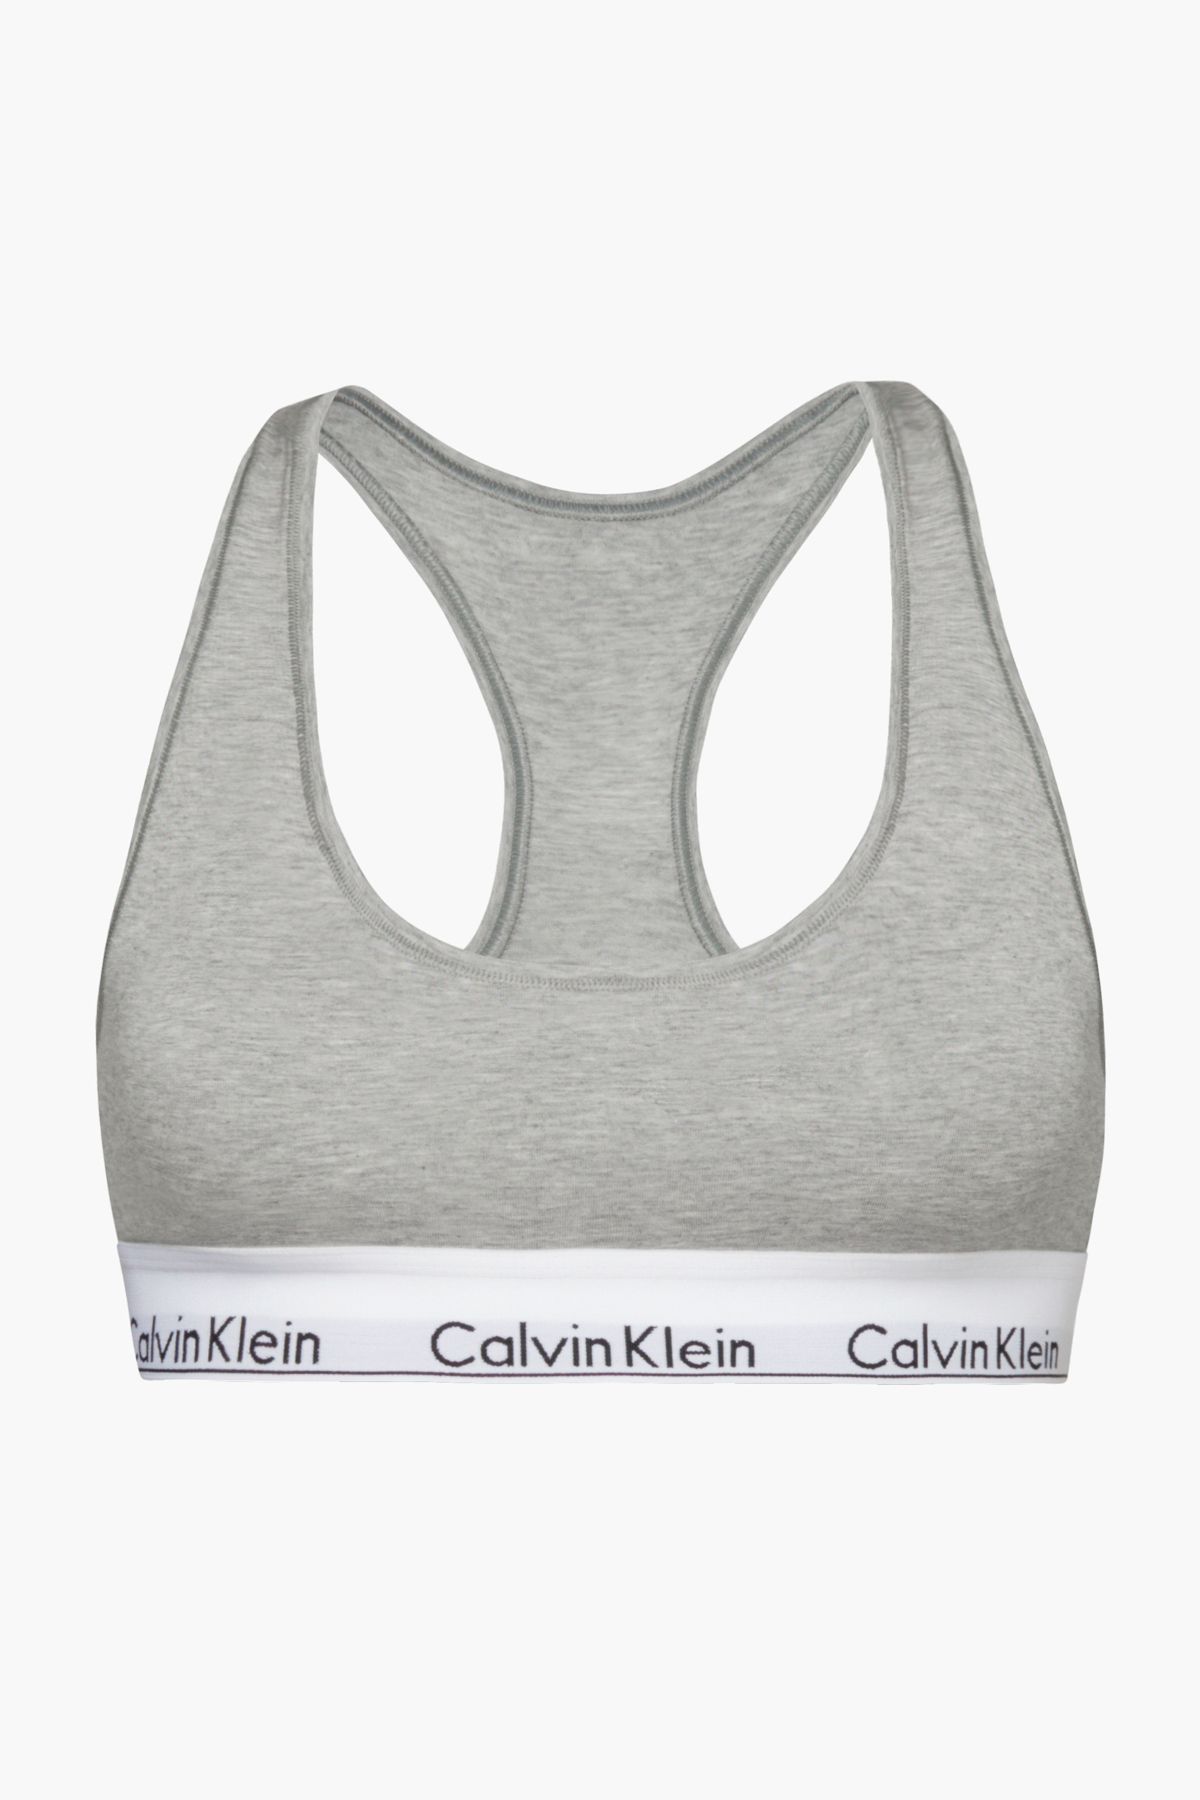 Calvin Klein Kadın Marka Logolu Elastik Bantlı Günlük Kullanıma Uygun Gri Spor Sütyeni F3785e-020